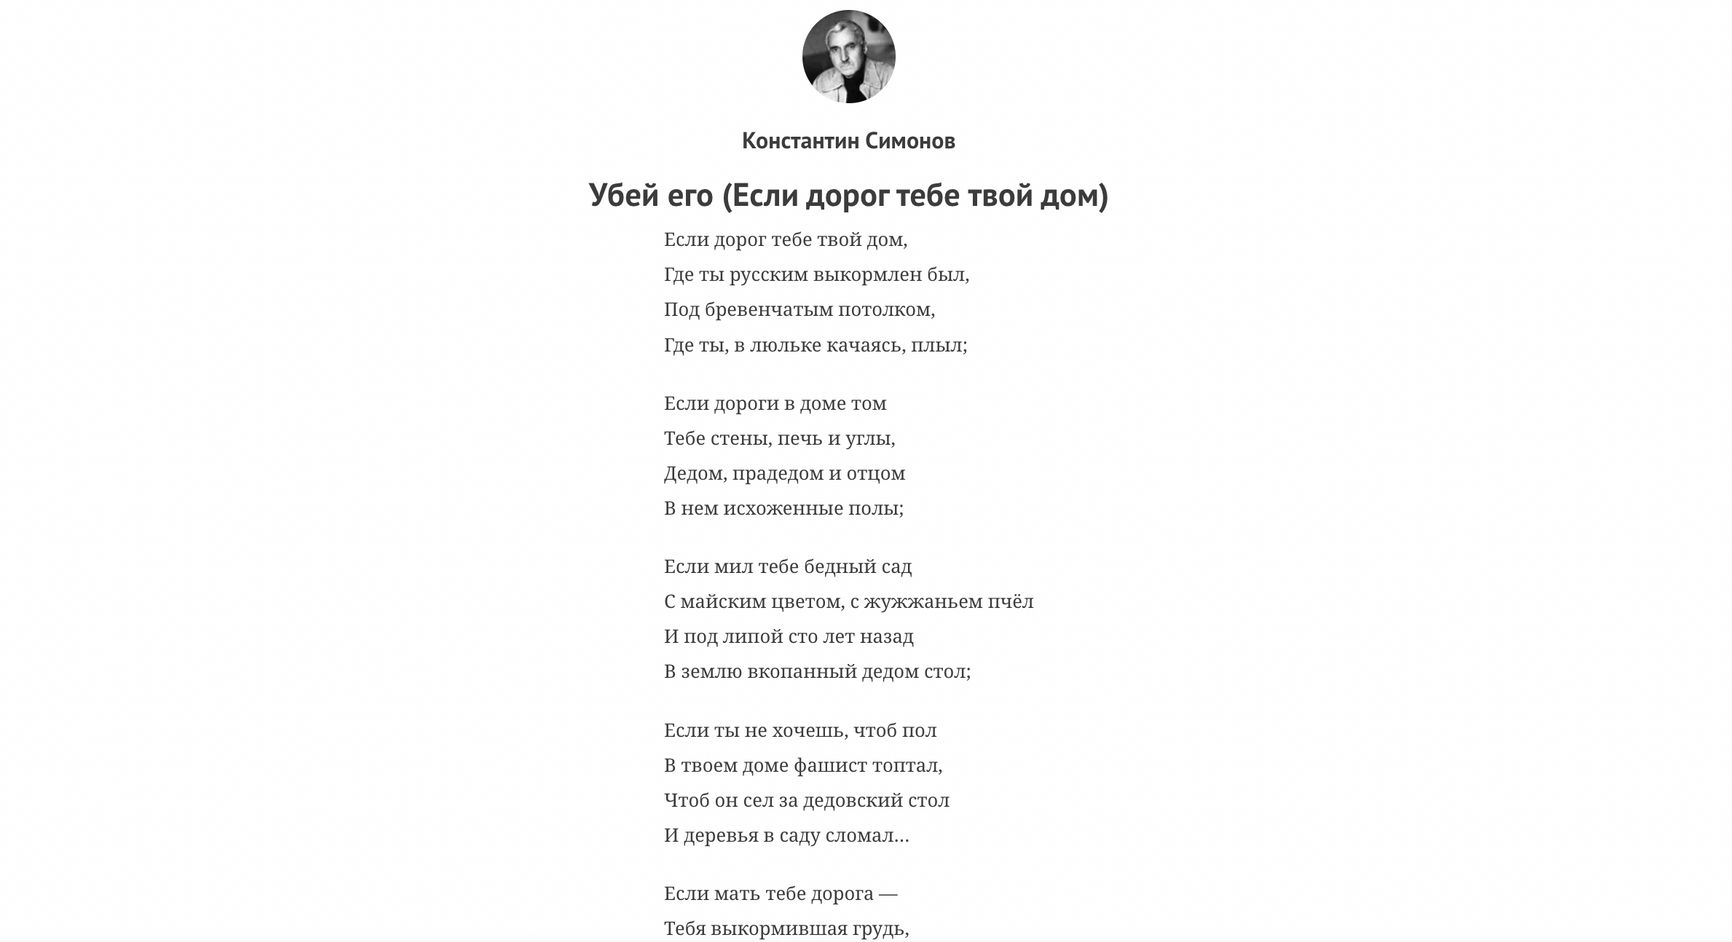 Глава департамента культуры Москвы призвал убивать украинцев, зачитав стихи Симонова 1942 года